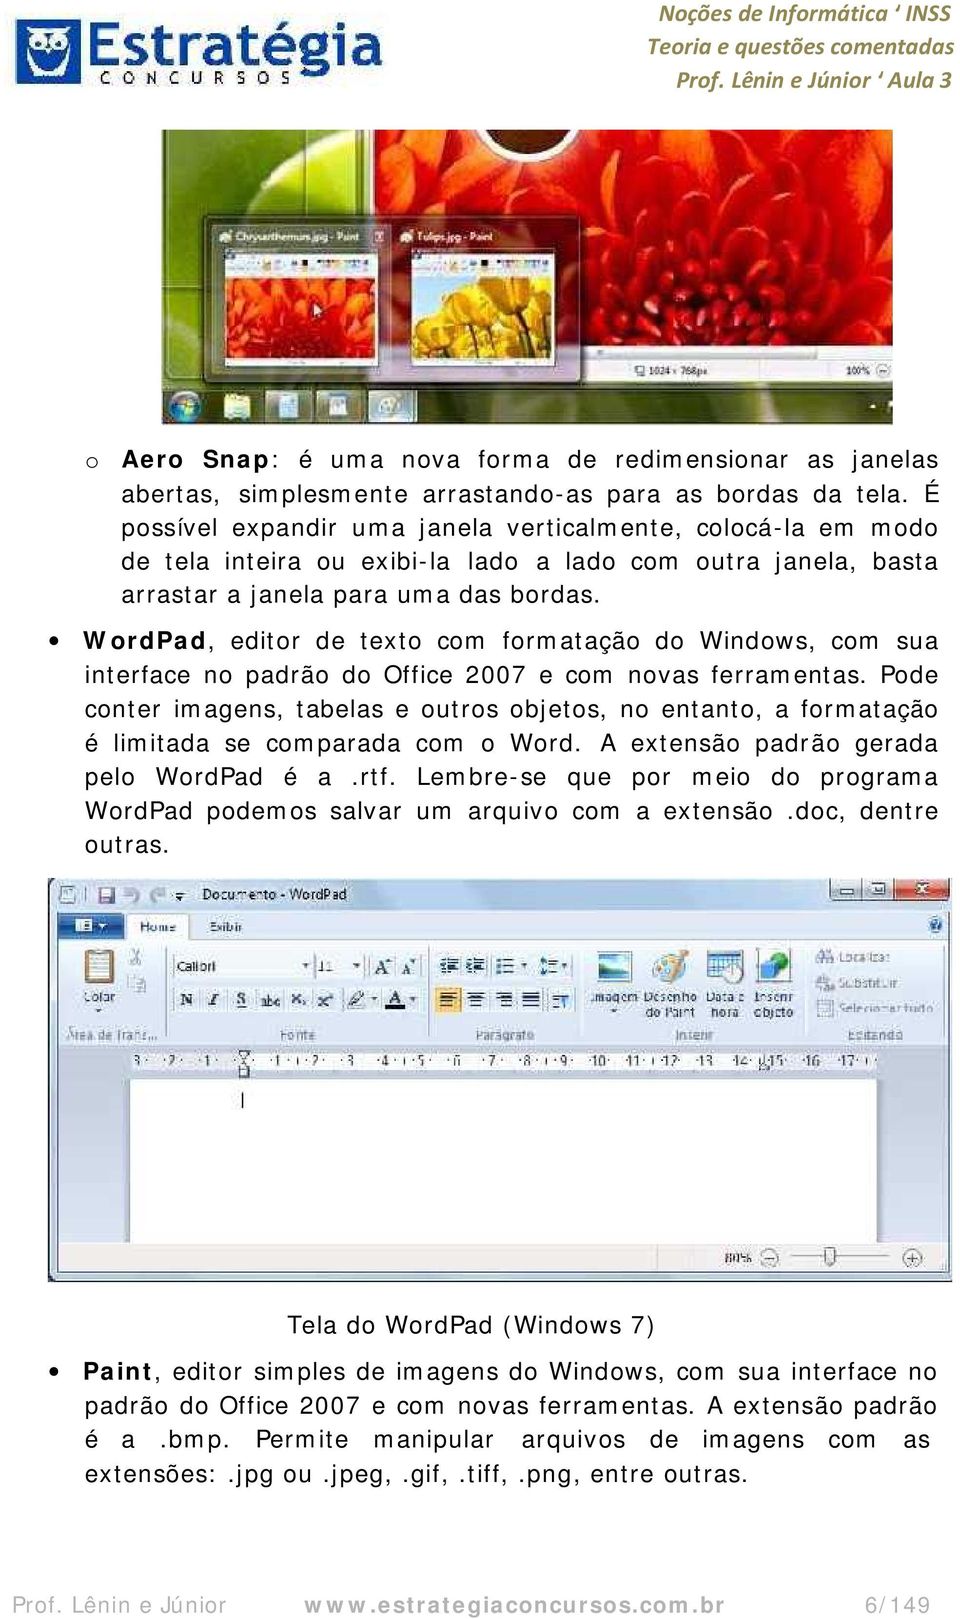 WordPad, editor de texto com formatação do Windows, com sua interface no padrão do Office 2007 e com novas ferramentas.